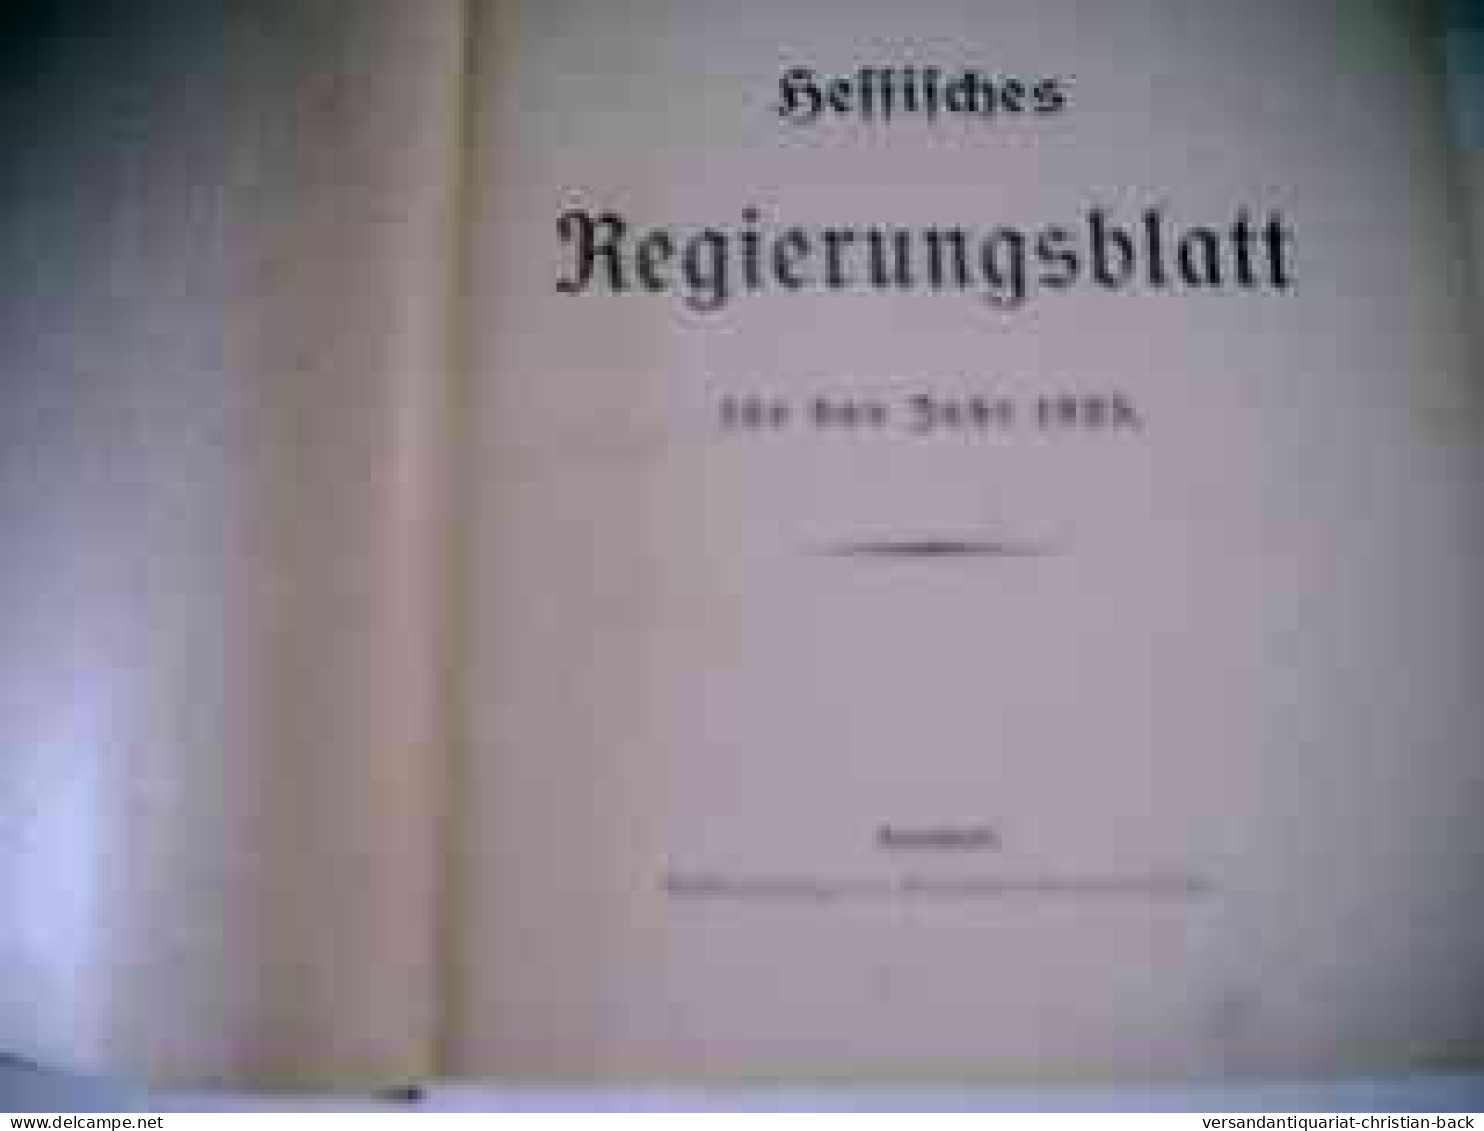 Hessisches Regierungsblatt Für Das Jahr 1925 - Derecho